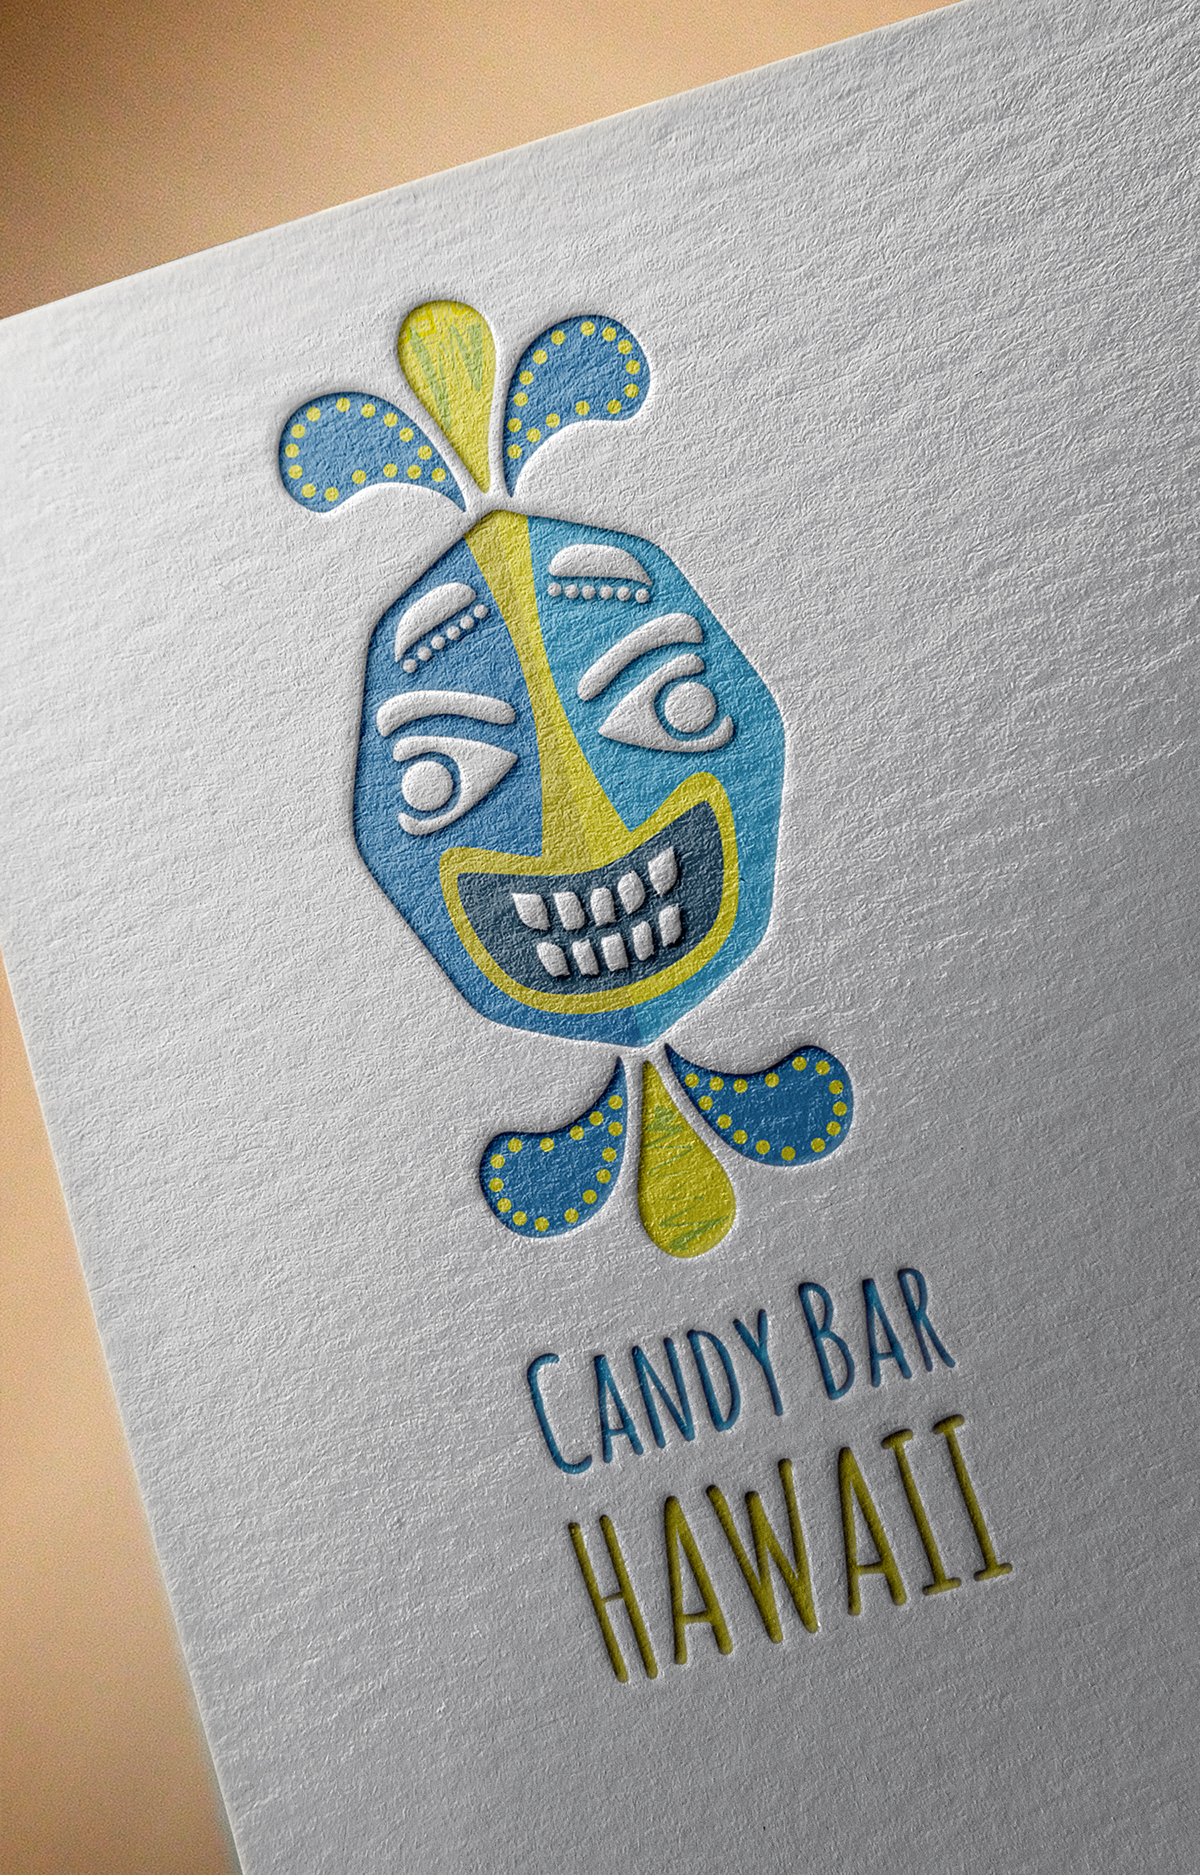 Candy bar HAWAII logo